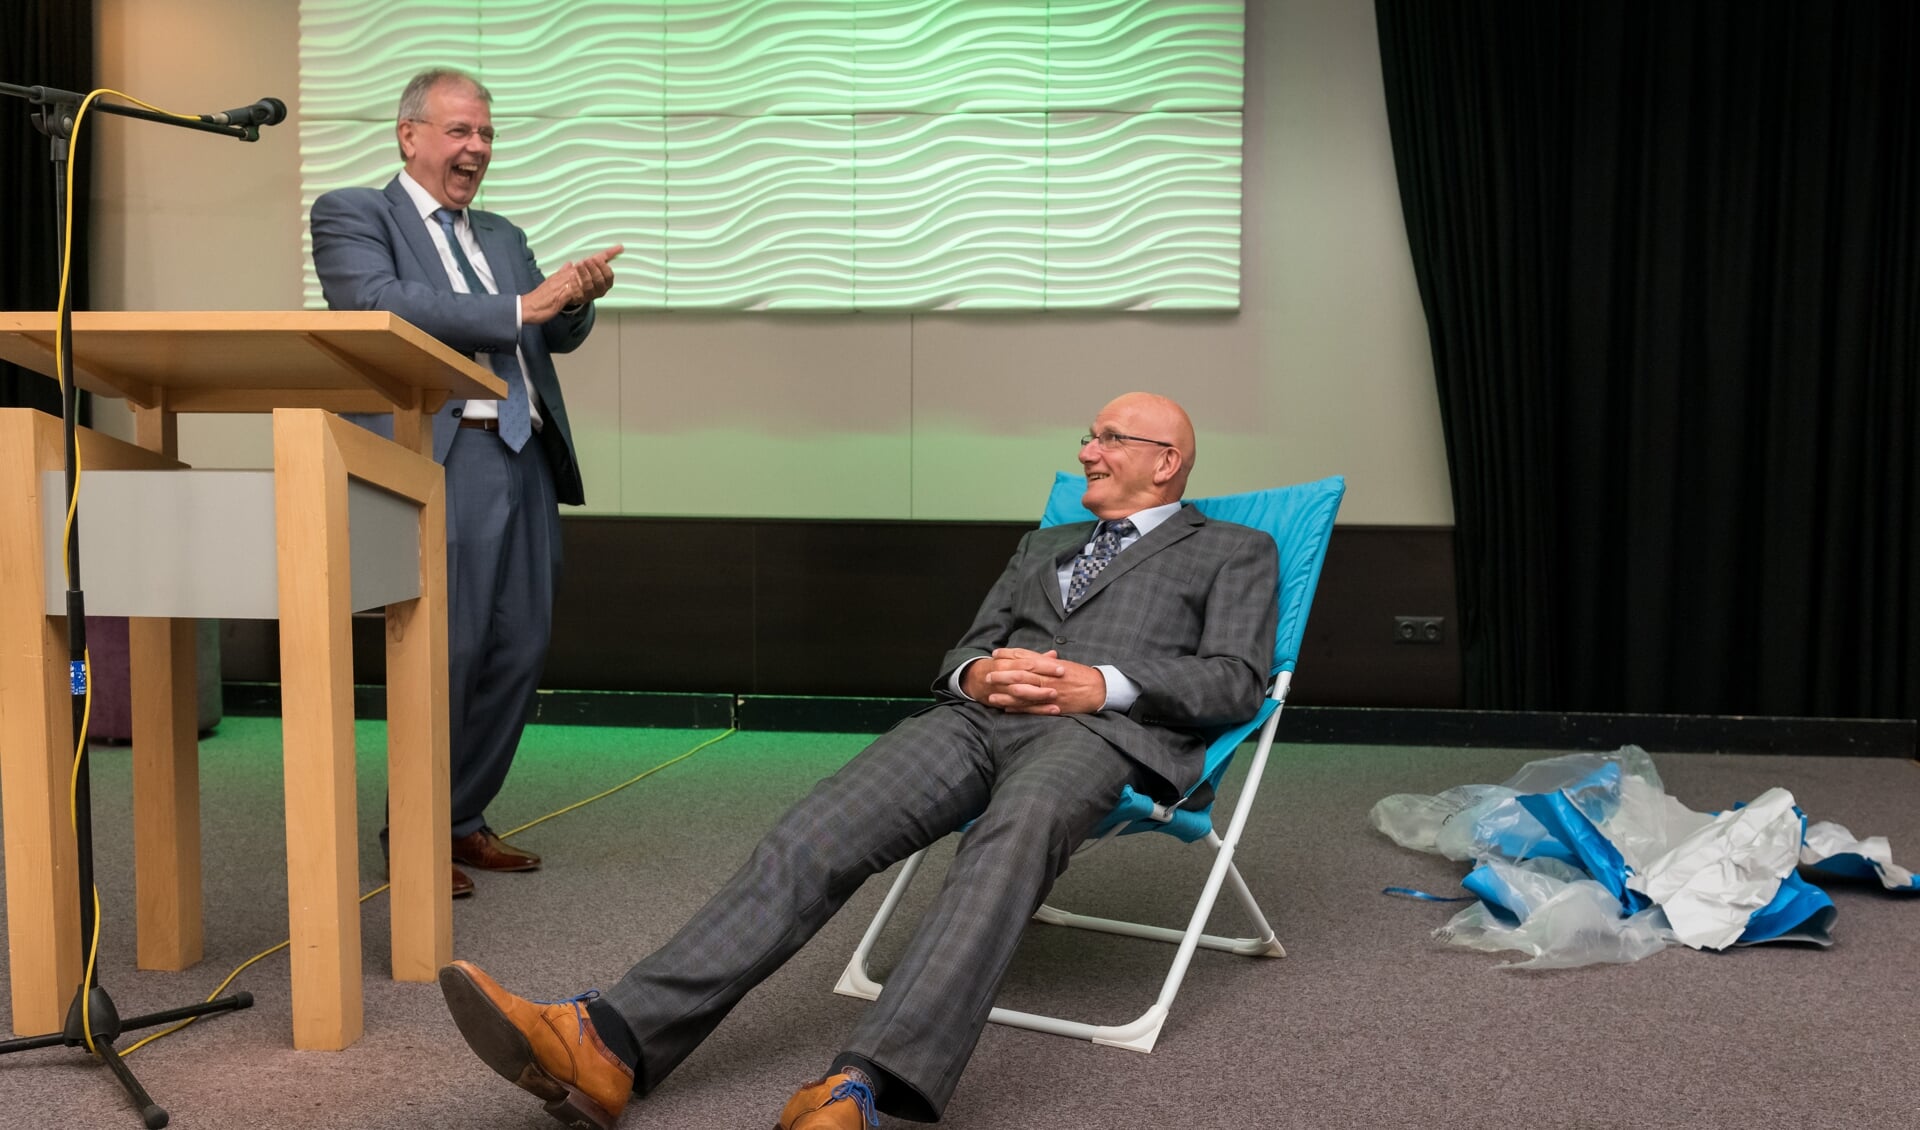 Twee scheidende directeuren van woningbouwverenigingen. Simon van Nieuwaal schonk Gert-Jan van der Valk het symbool van rust: de luie stoel.